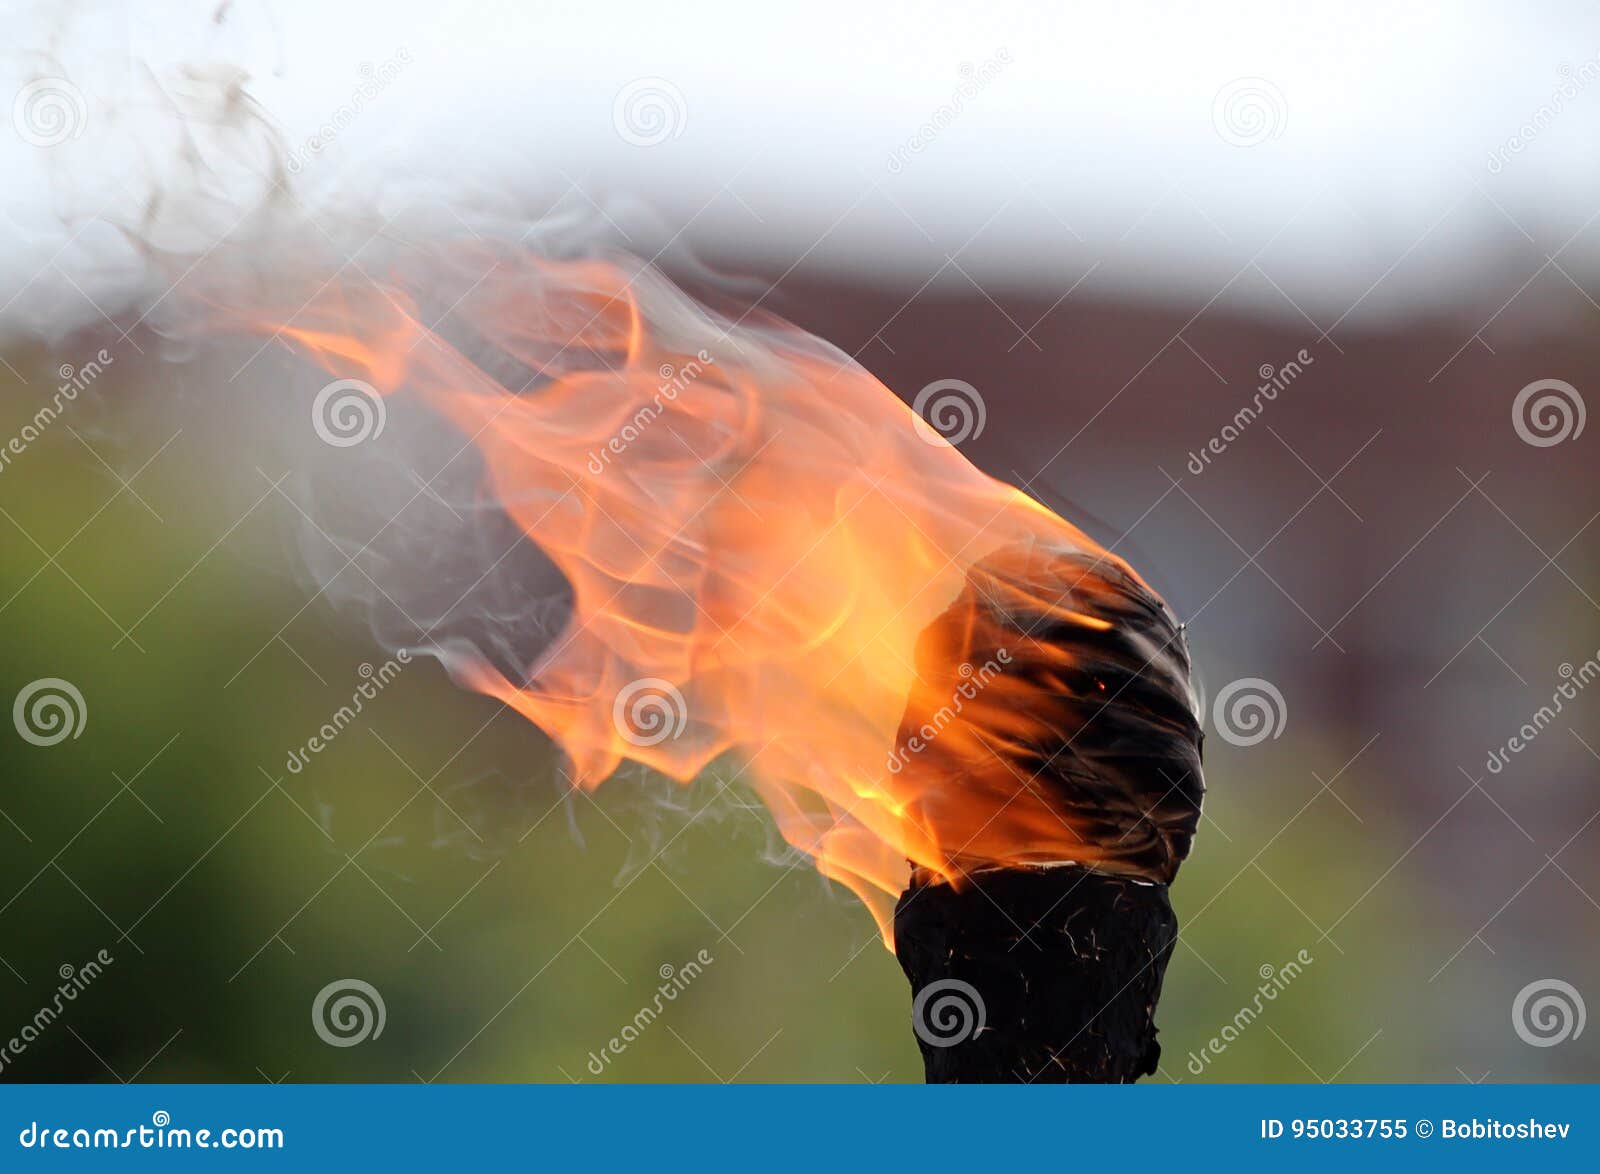 Фото факел палец. Факел сгорел на земле формула артиллерия. Minecraft сгоревший факел. Мазутный факел как горит.